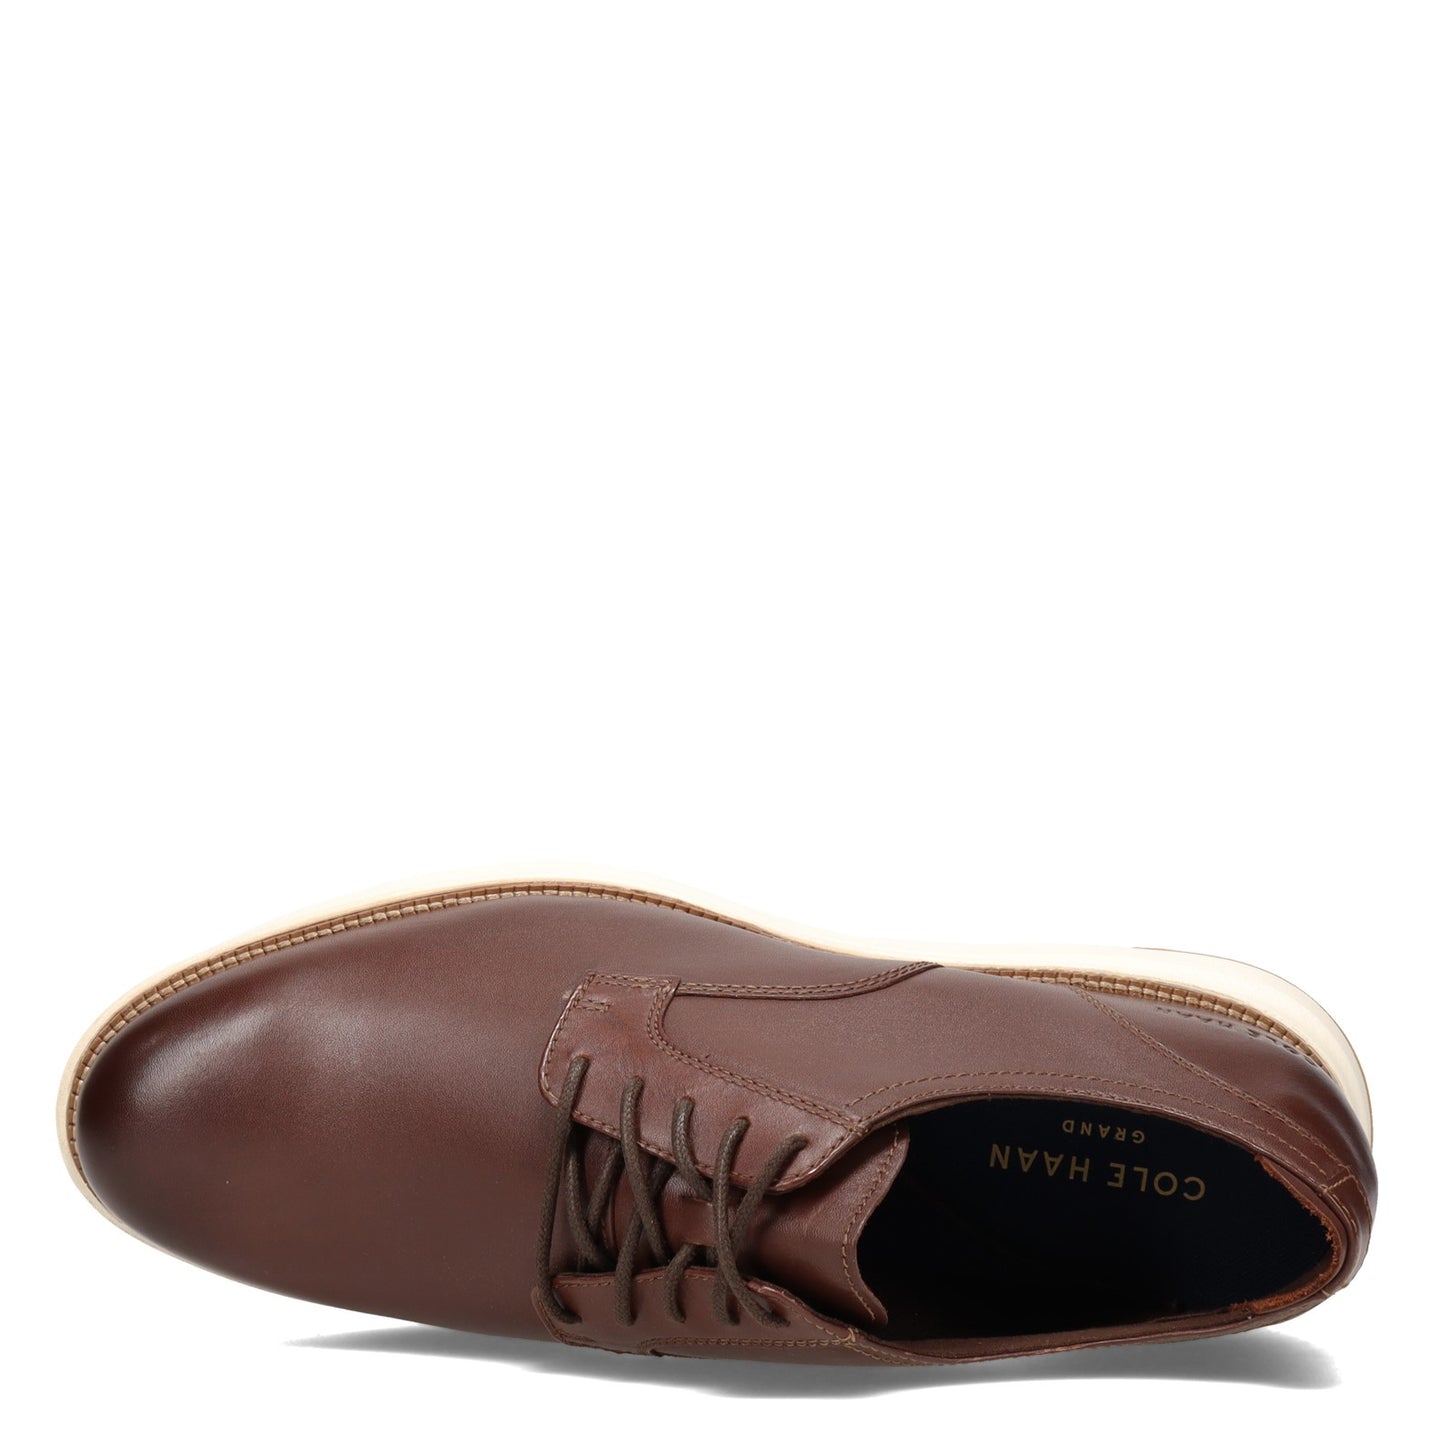 Peltz Shoes  Men's Cole Haan Grand Atlantic Oxford CHESTNUT C34853